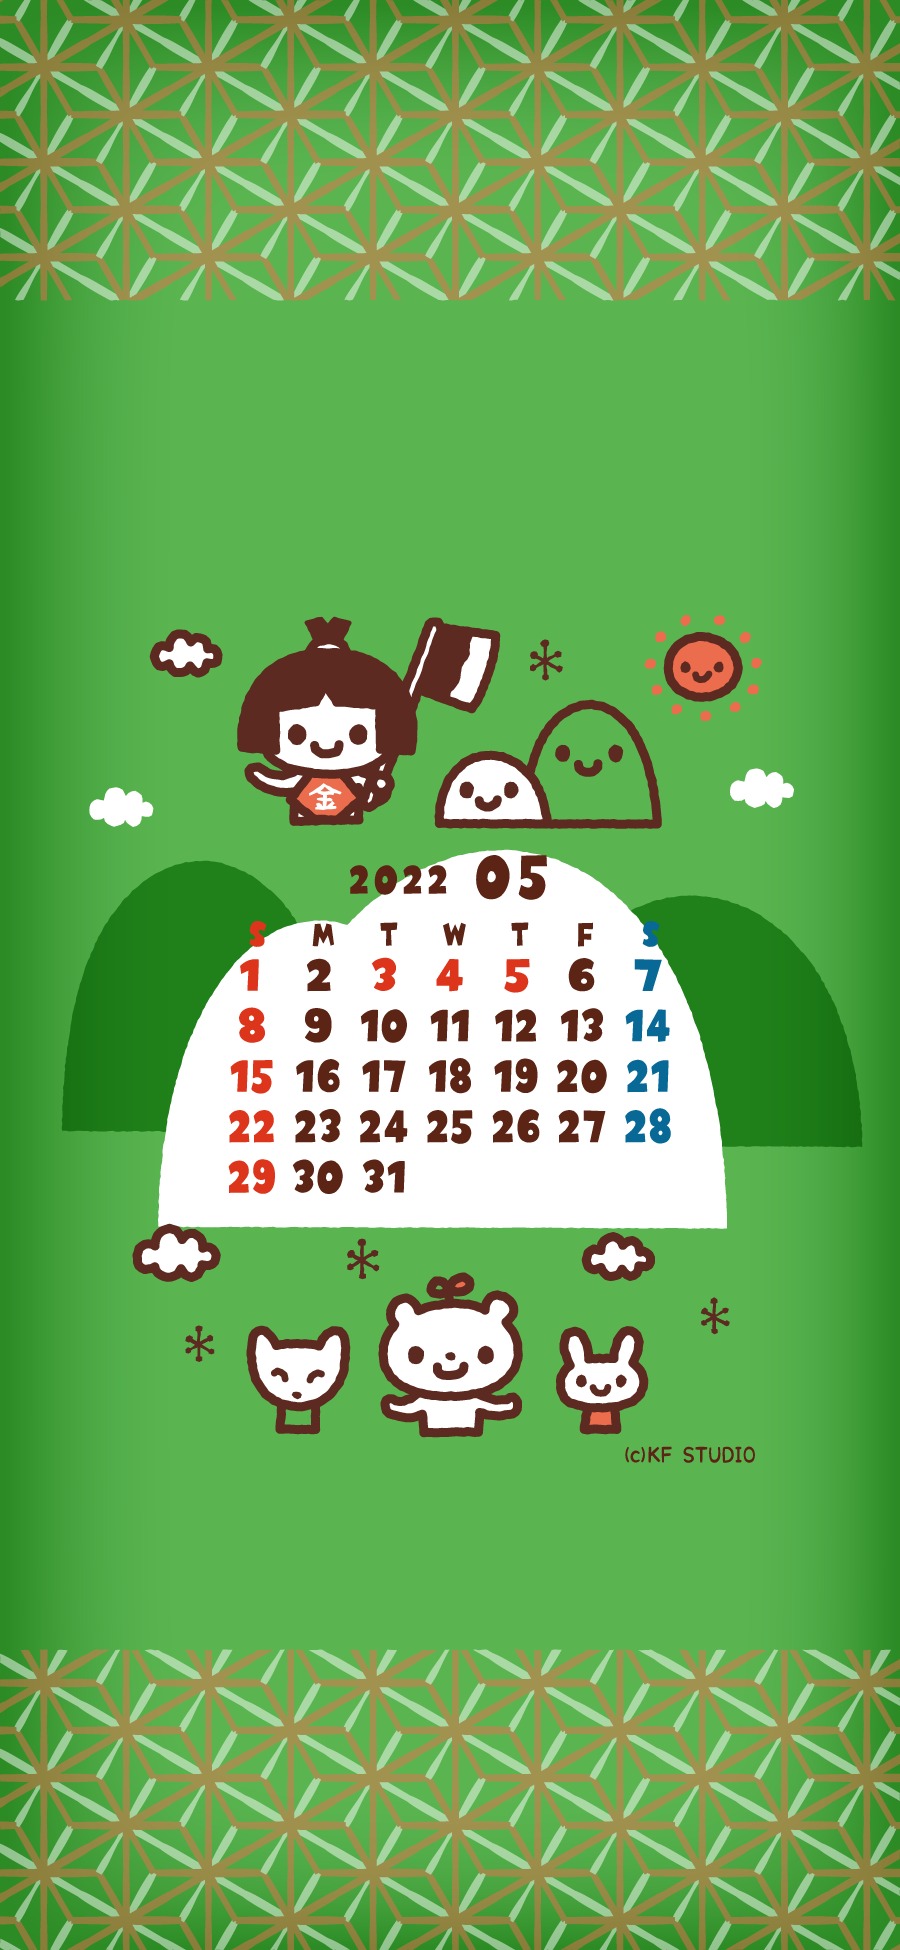 22年05月iphone壁紙カレンダー Kf Studio